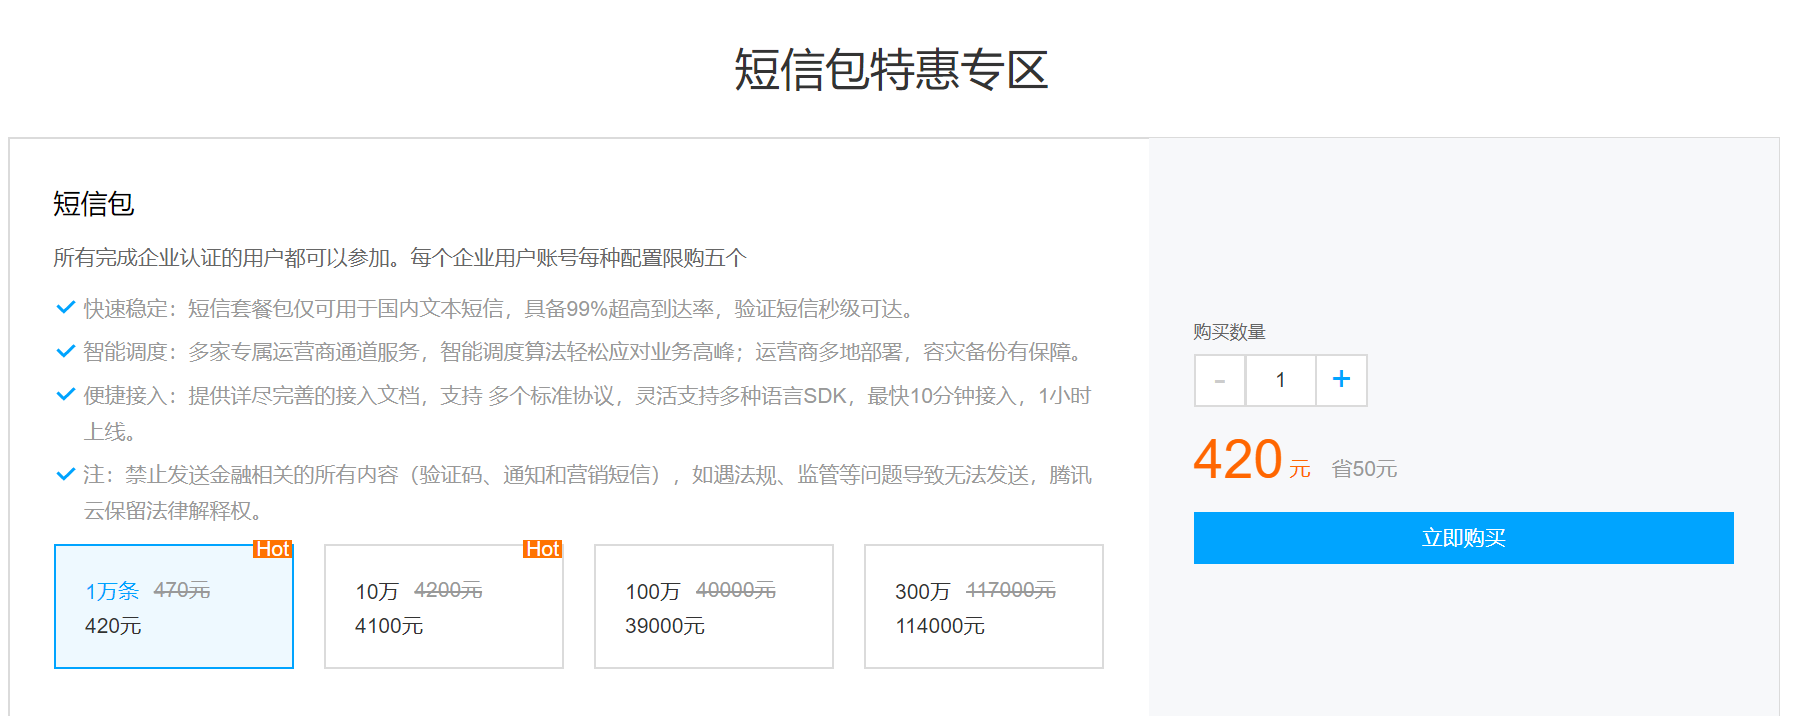 腾讯云企业上云国内短信包促销每条短信收费最低3分8